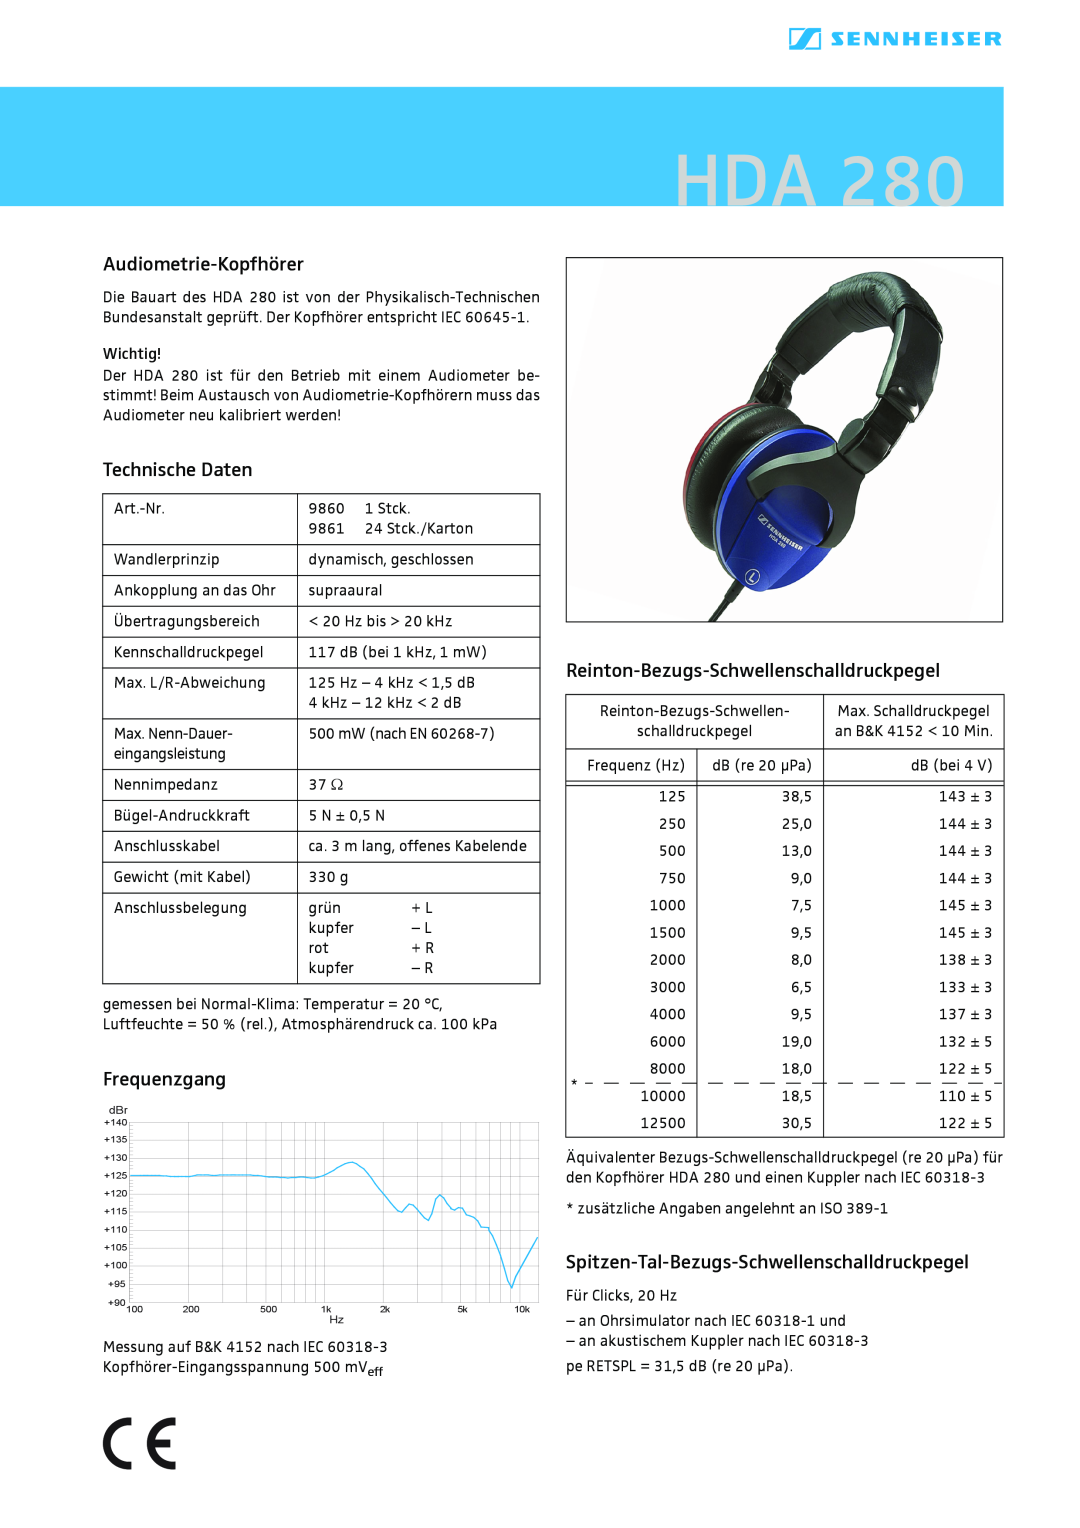 Sennheiser HDA 280 manual Audiometrie-Kopfhörer, Technische Daten, Frequenzgang, Reinton-Bezugs-Schwellenschalldruckpegel 